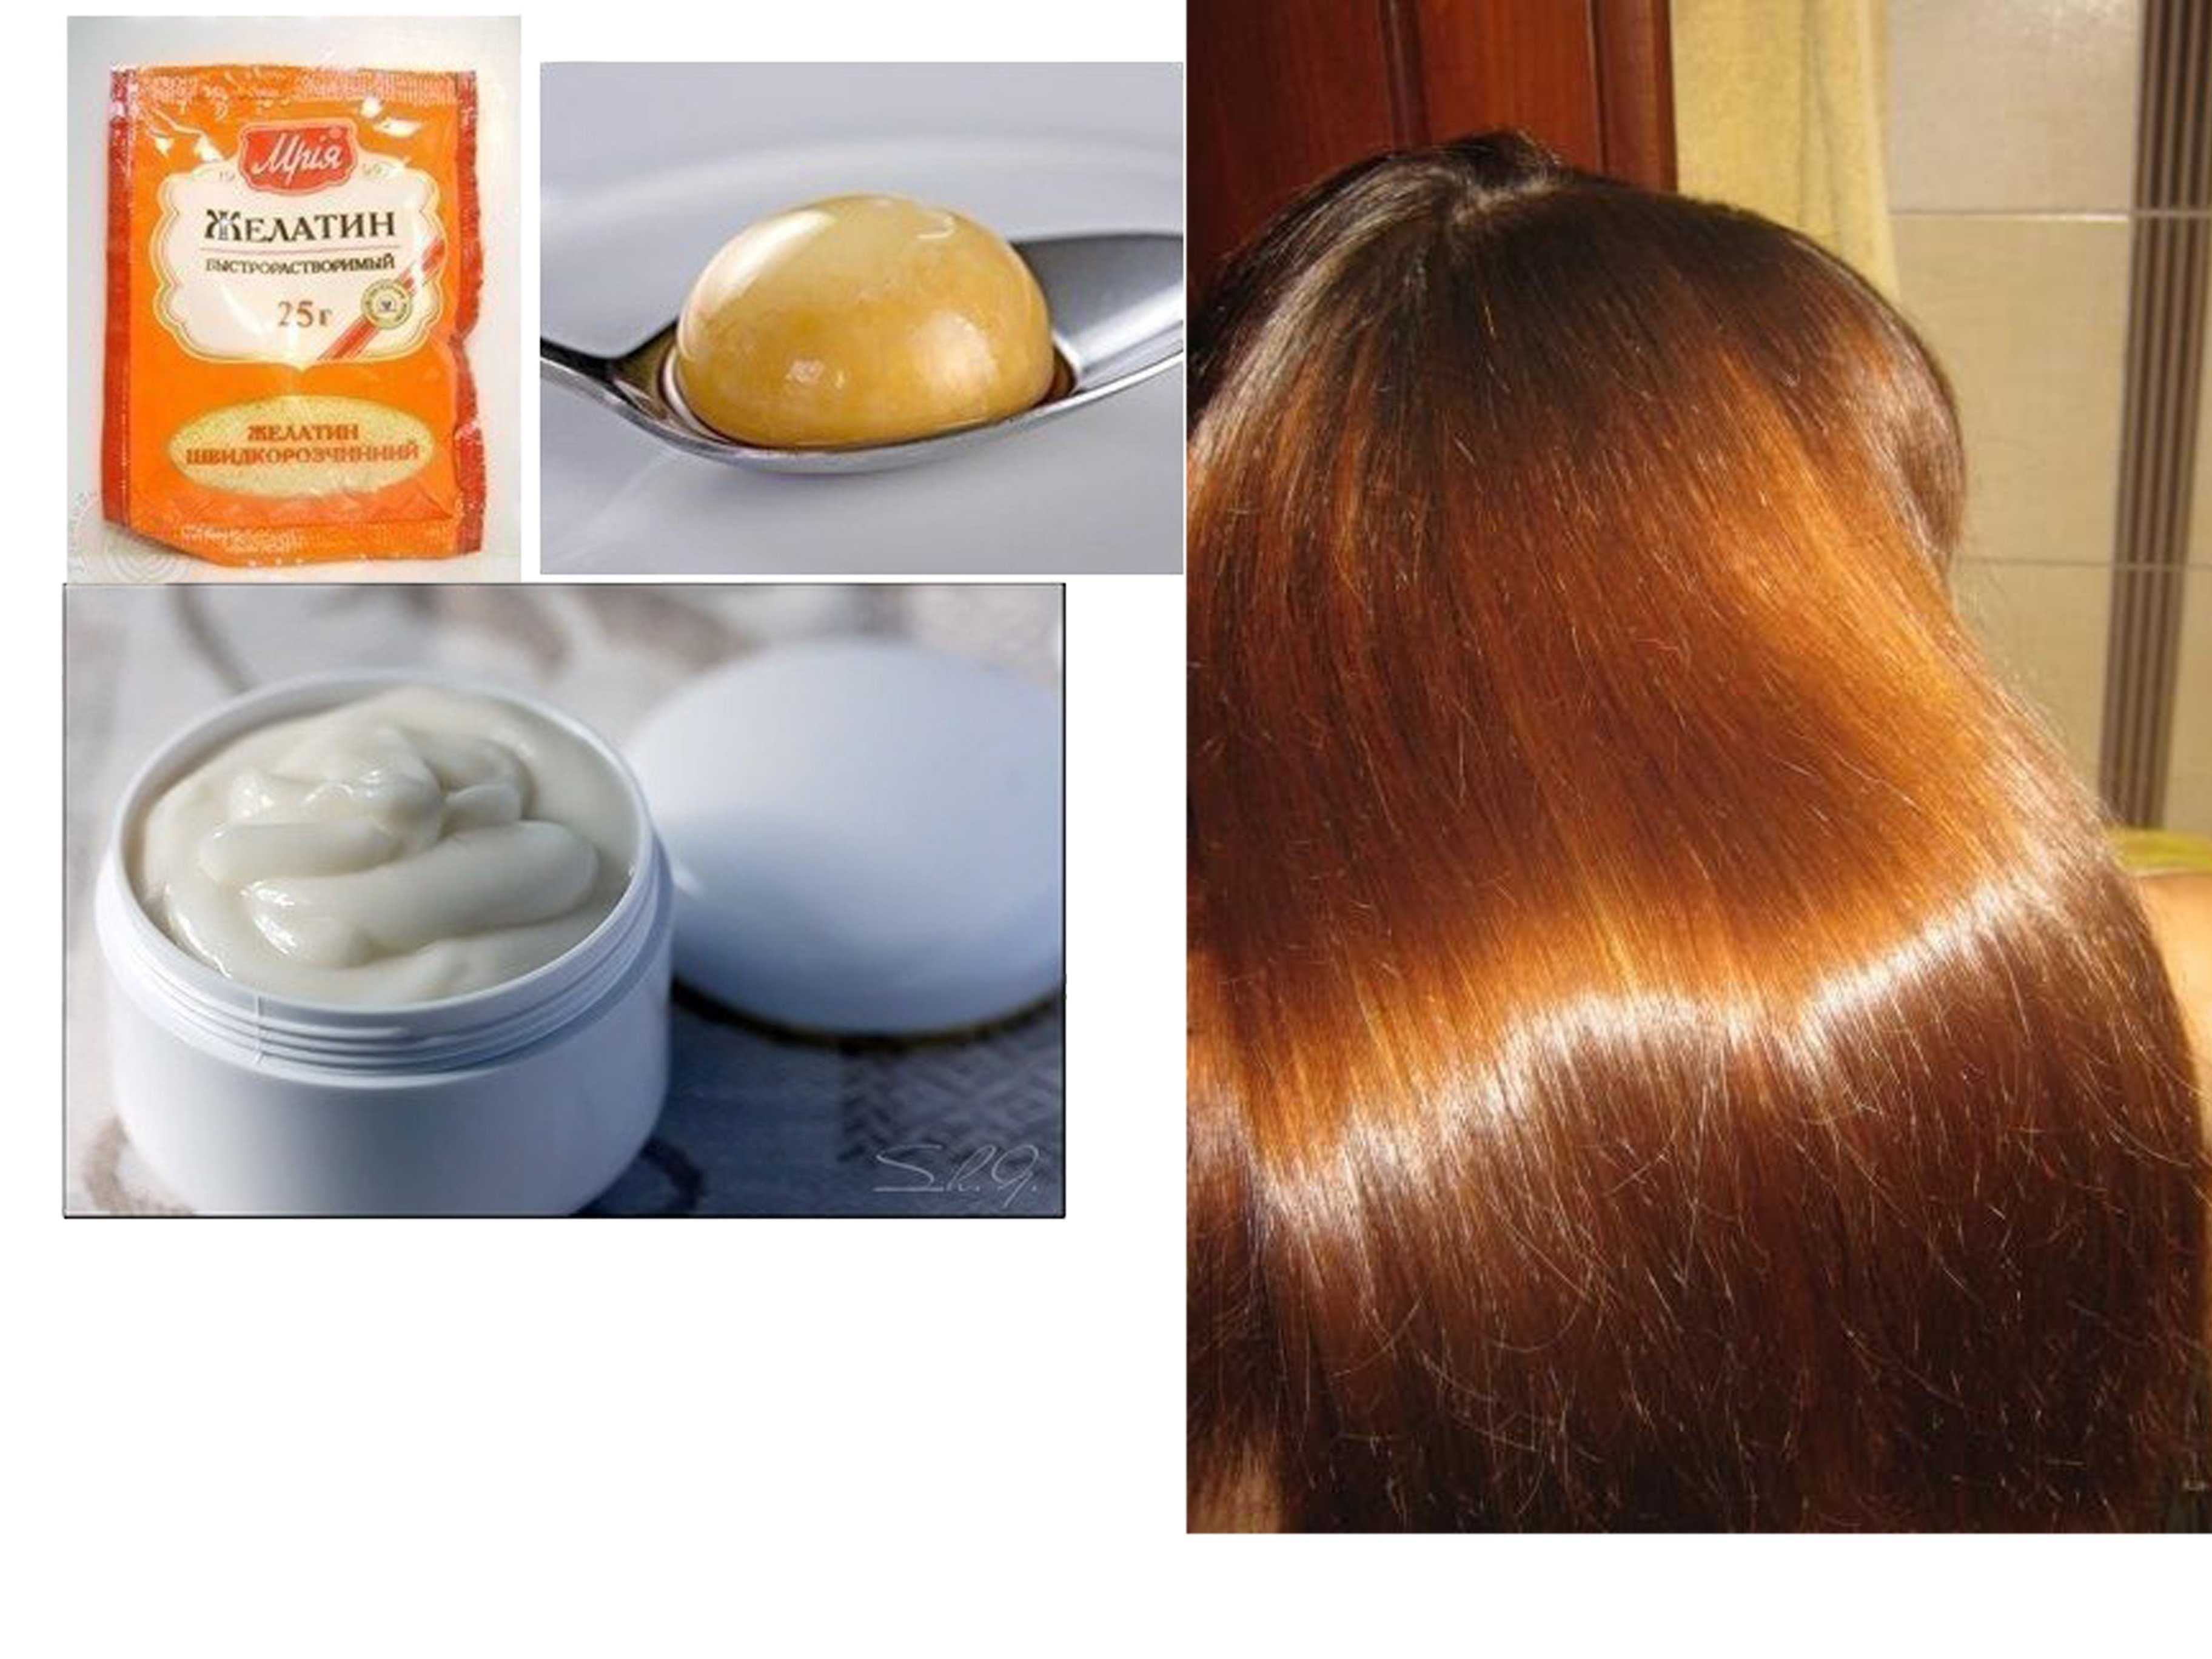 Рецепты правильного желатинового ламинирования волос с маской у себя дома Ламинирование волос пошагово с помощью желатина в домашних условиях